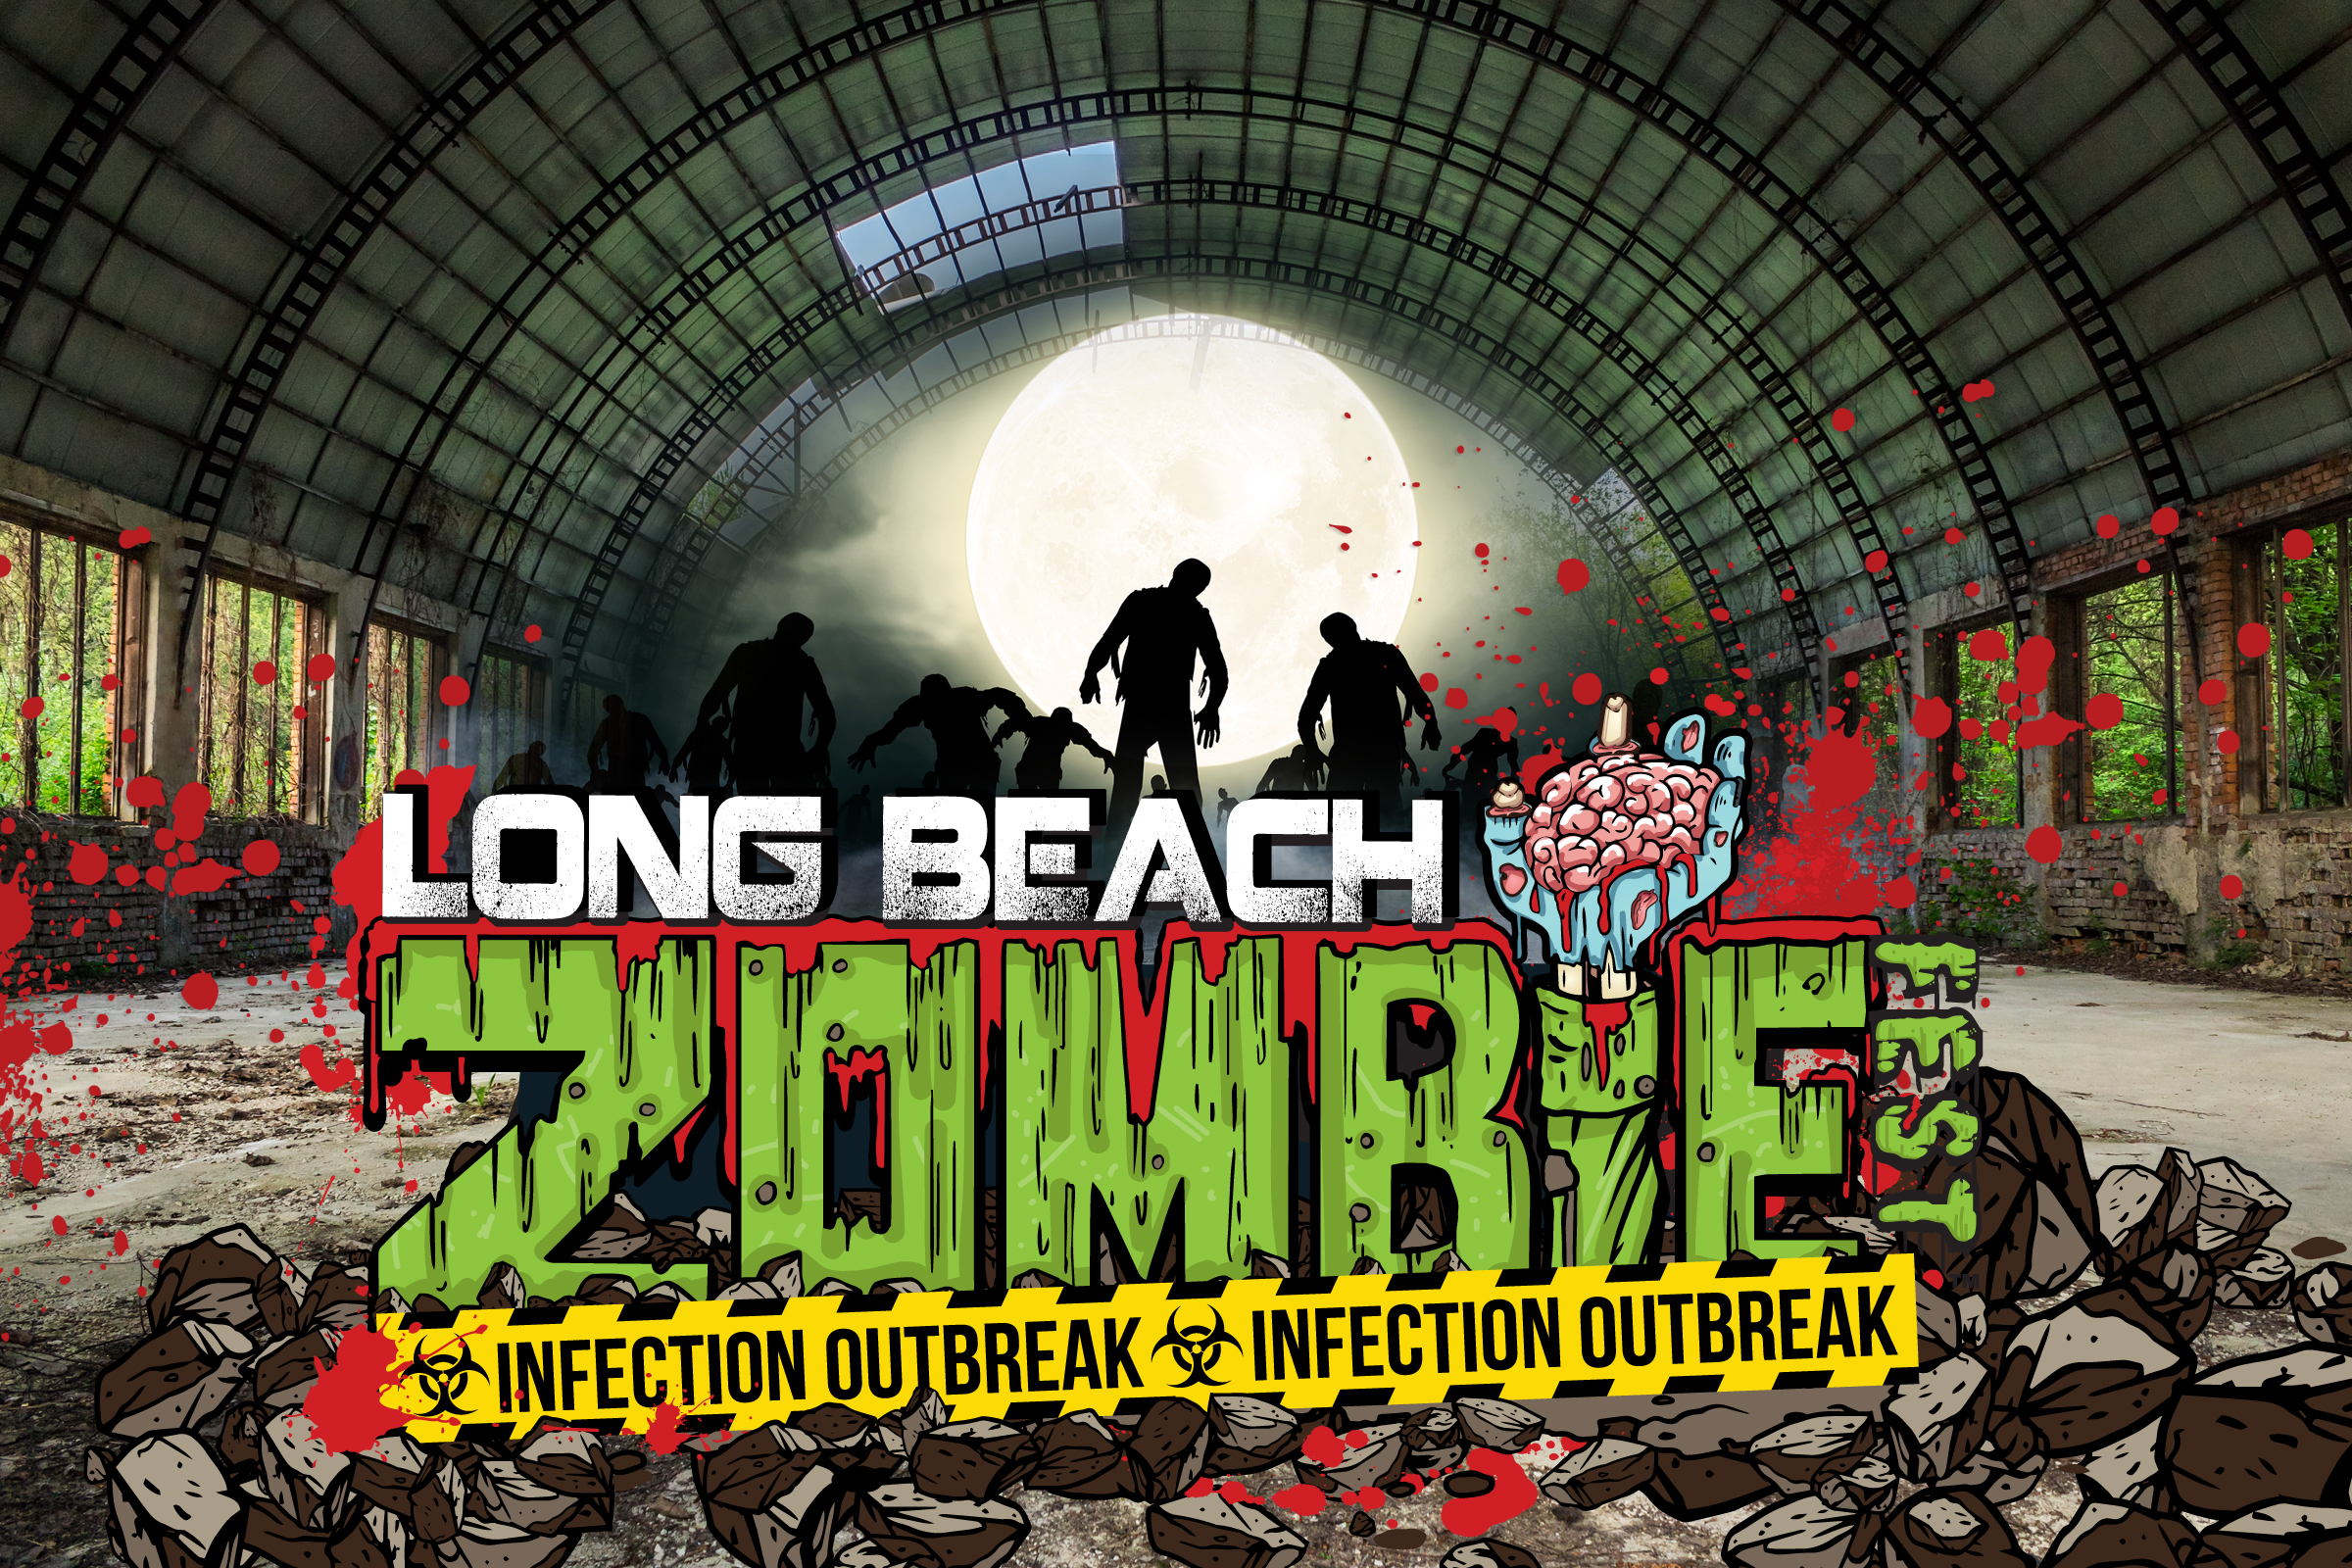 Media Long Beach Zombie Fest